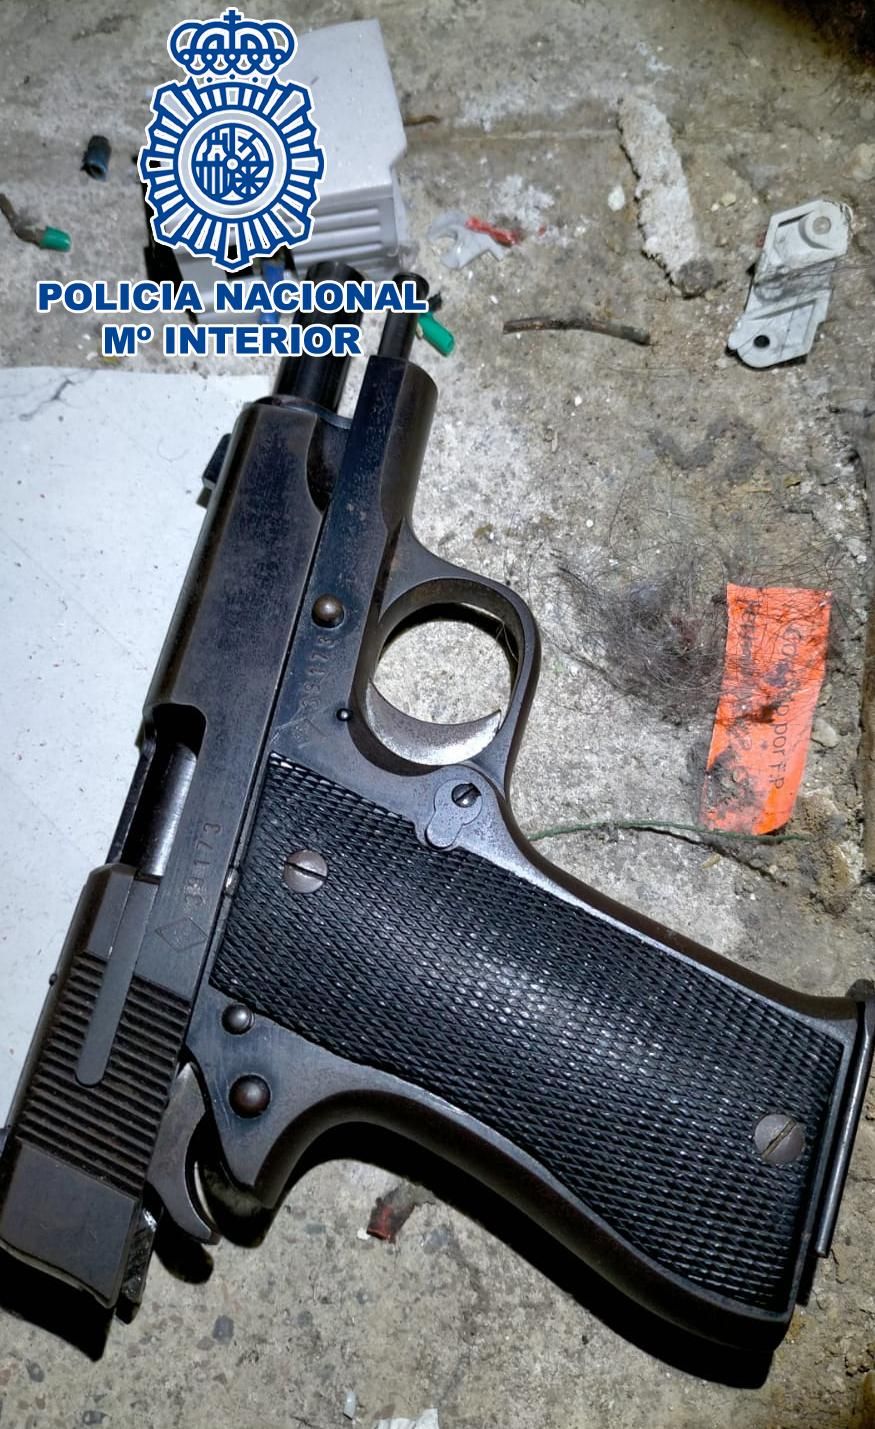 La pistola robada a un agente que fue usada en el tiroteo.